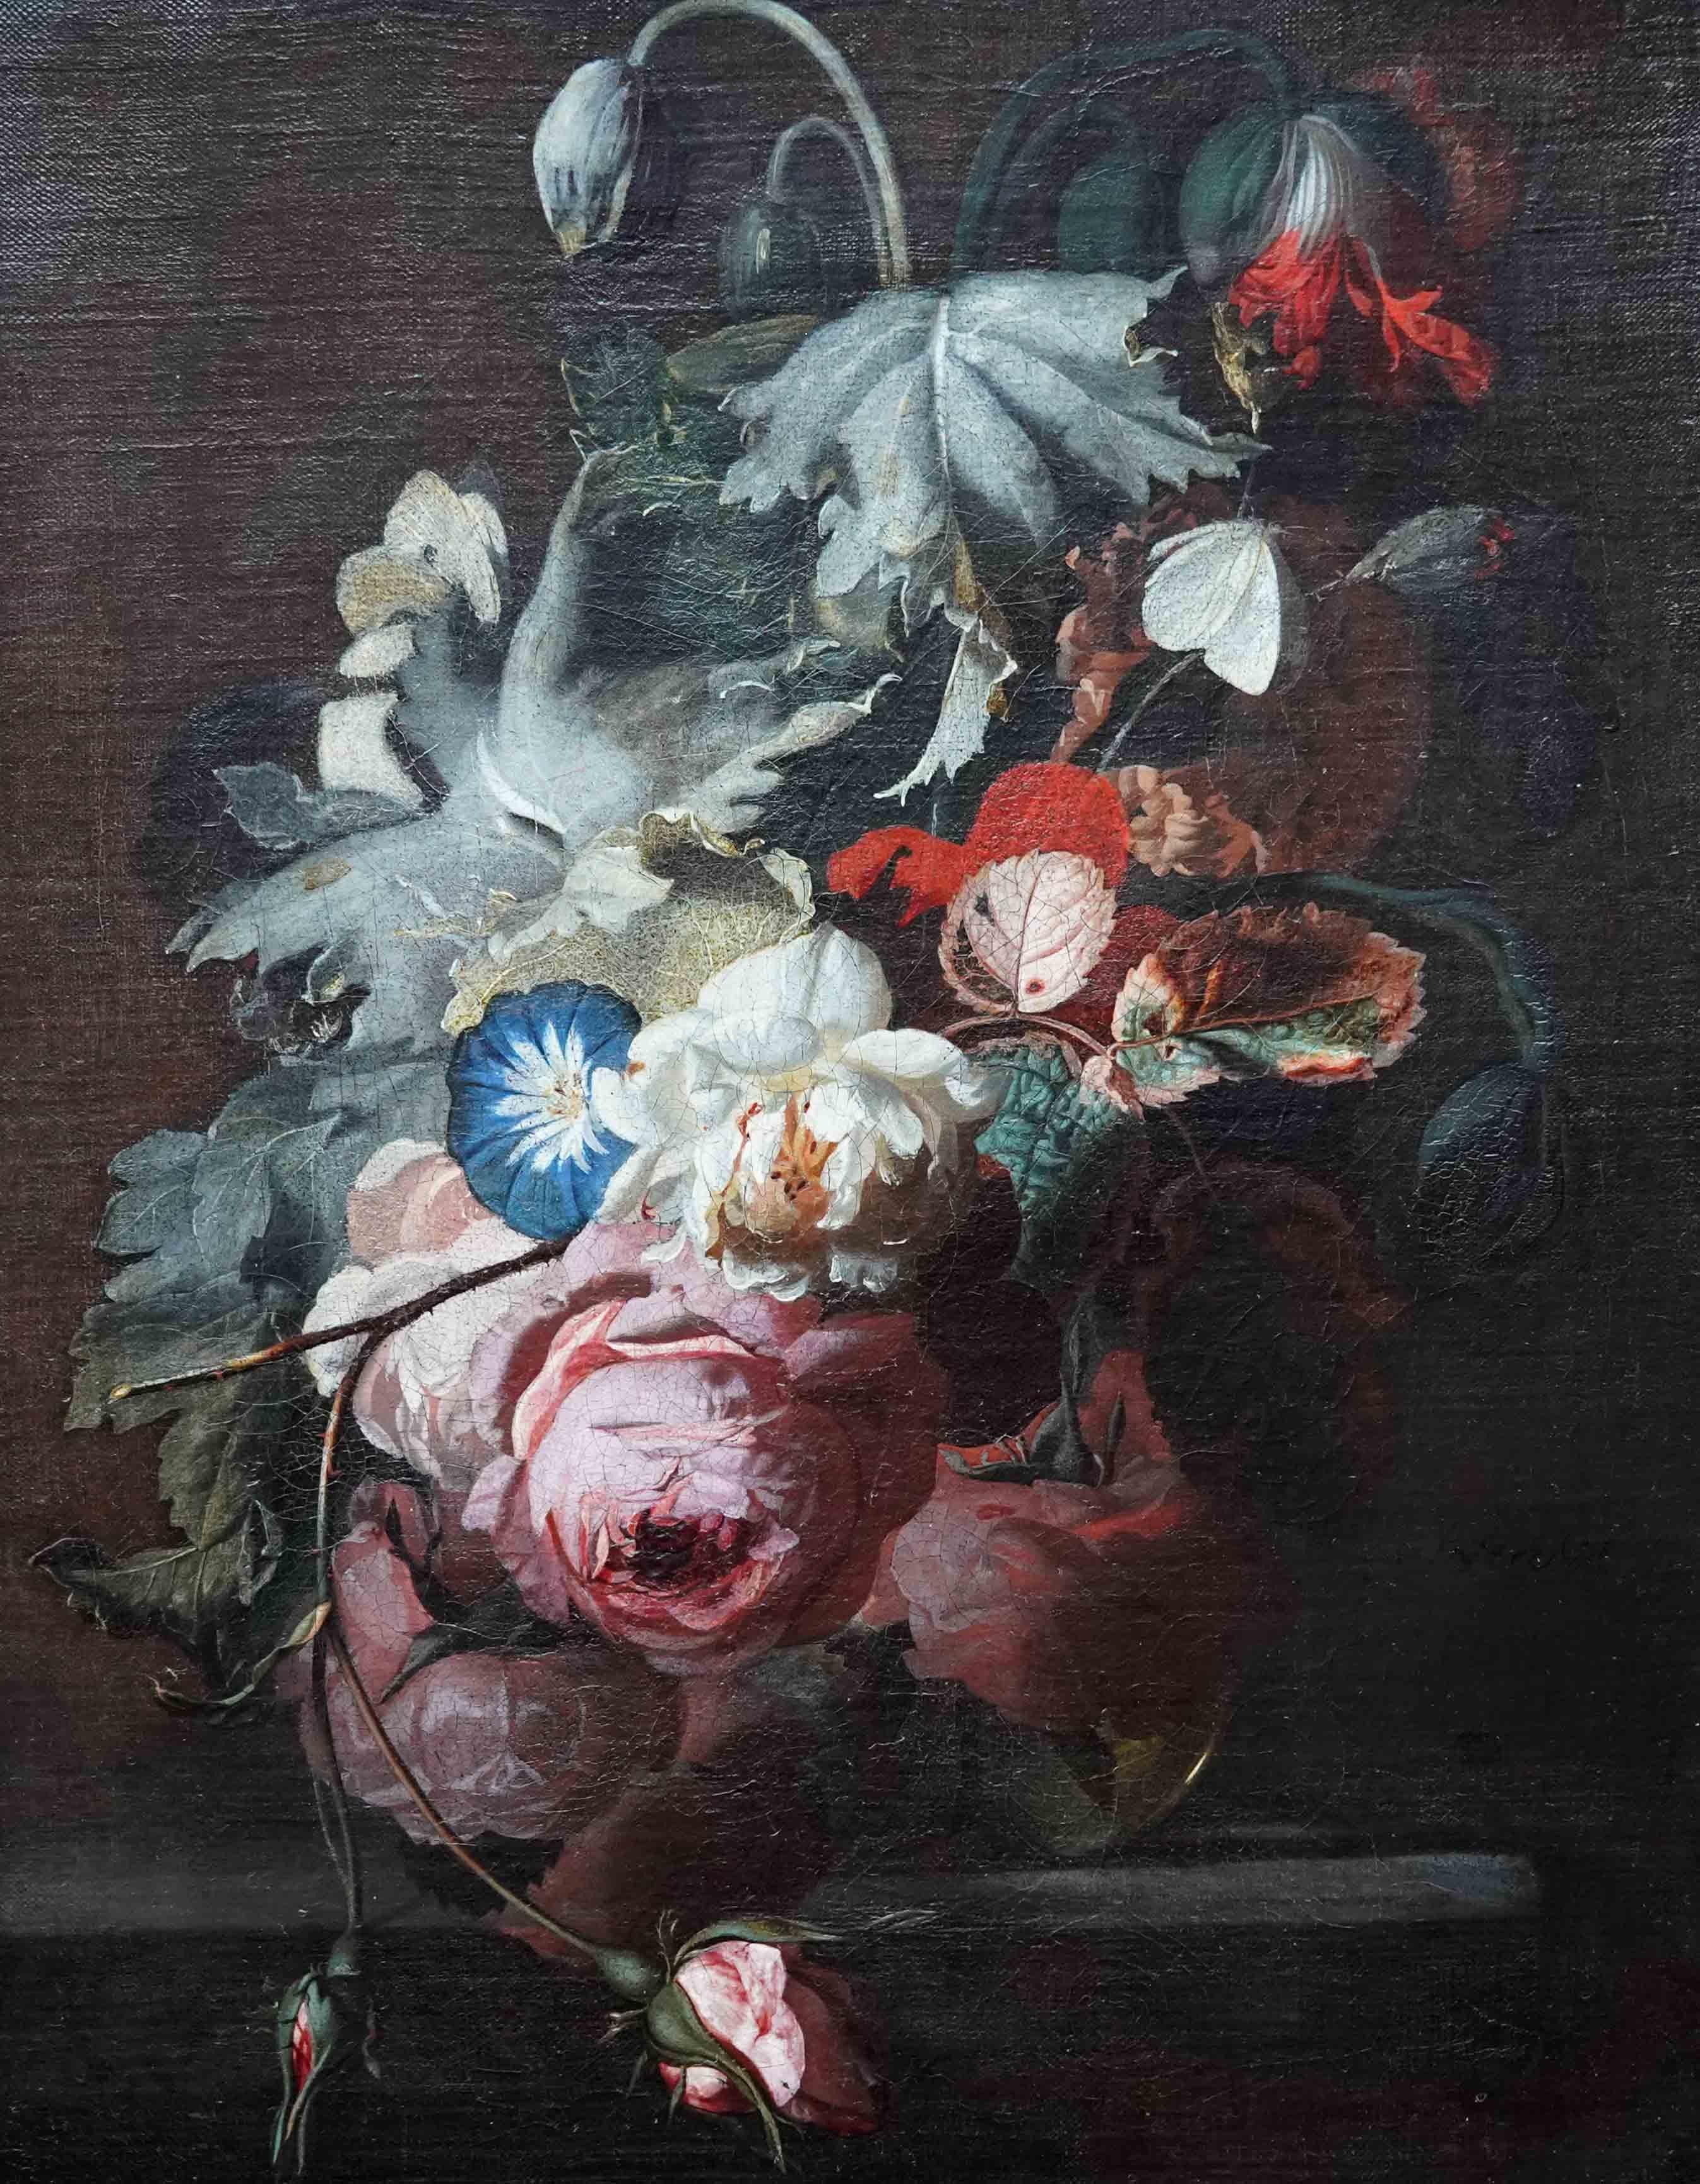 Stillleben mit Blumen in Vase auf Ledge – niederländisches Ölgemälde eines alten Meisters aus dem 17. Jahrhundert – Painting von Simon Pietersz Verelst